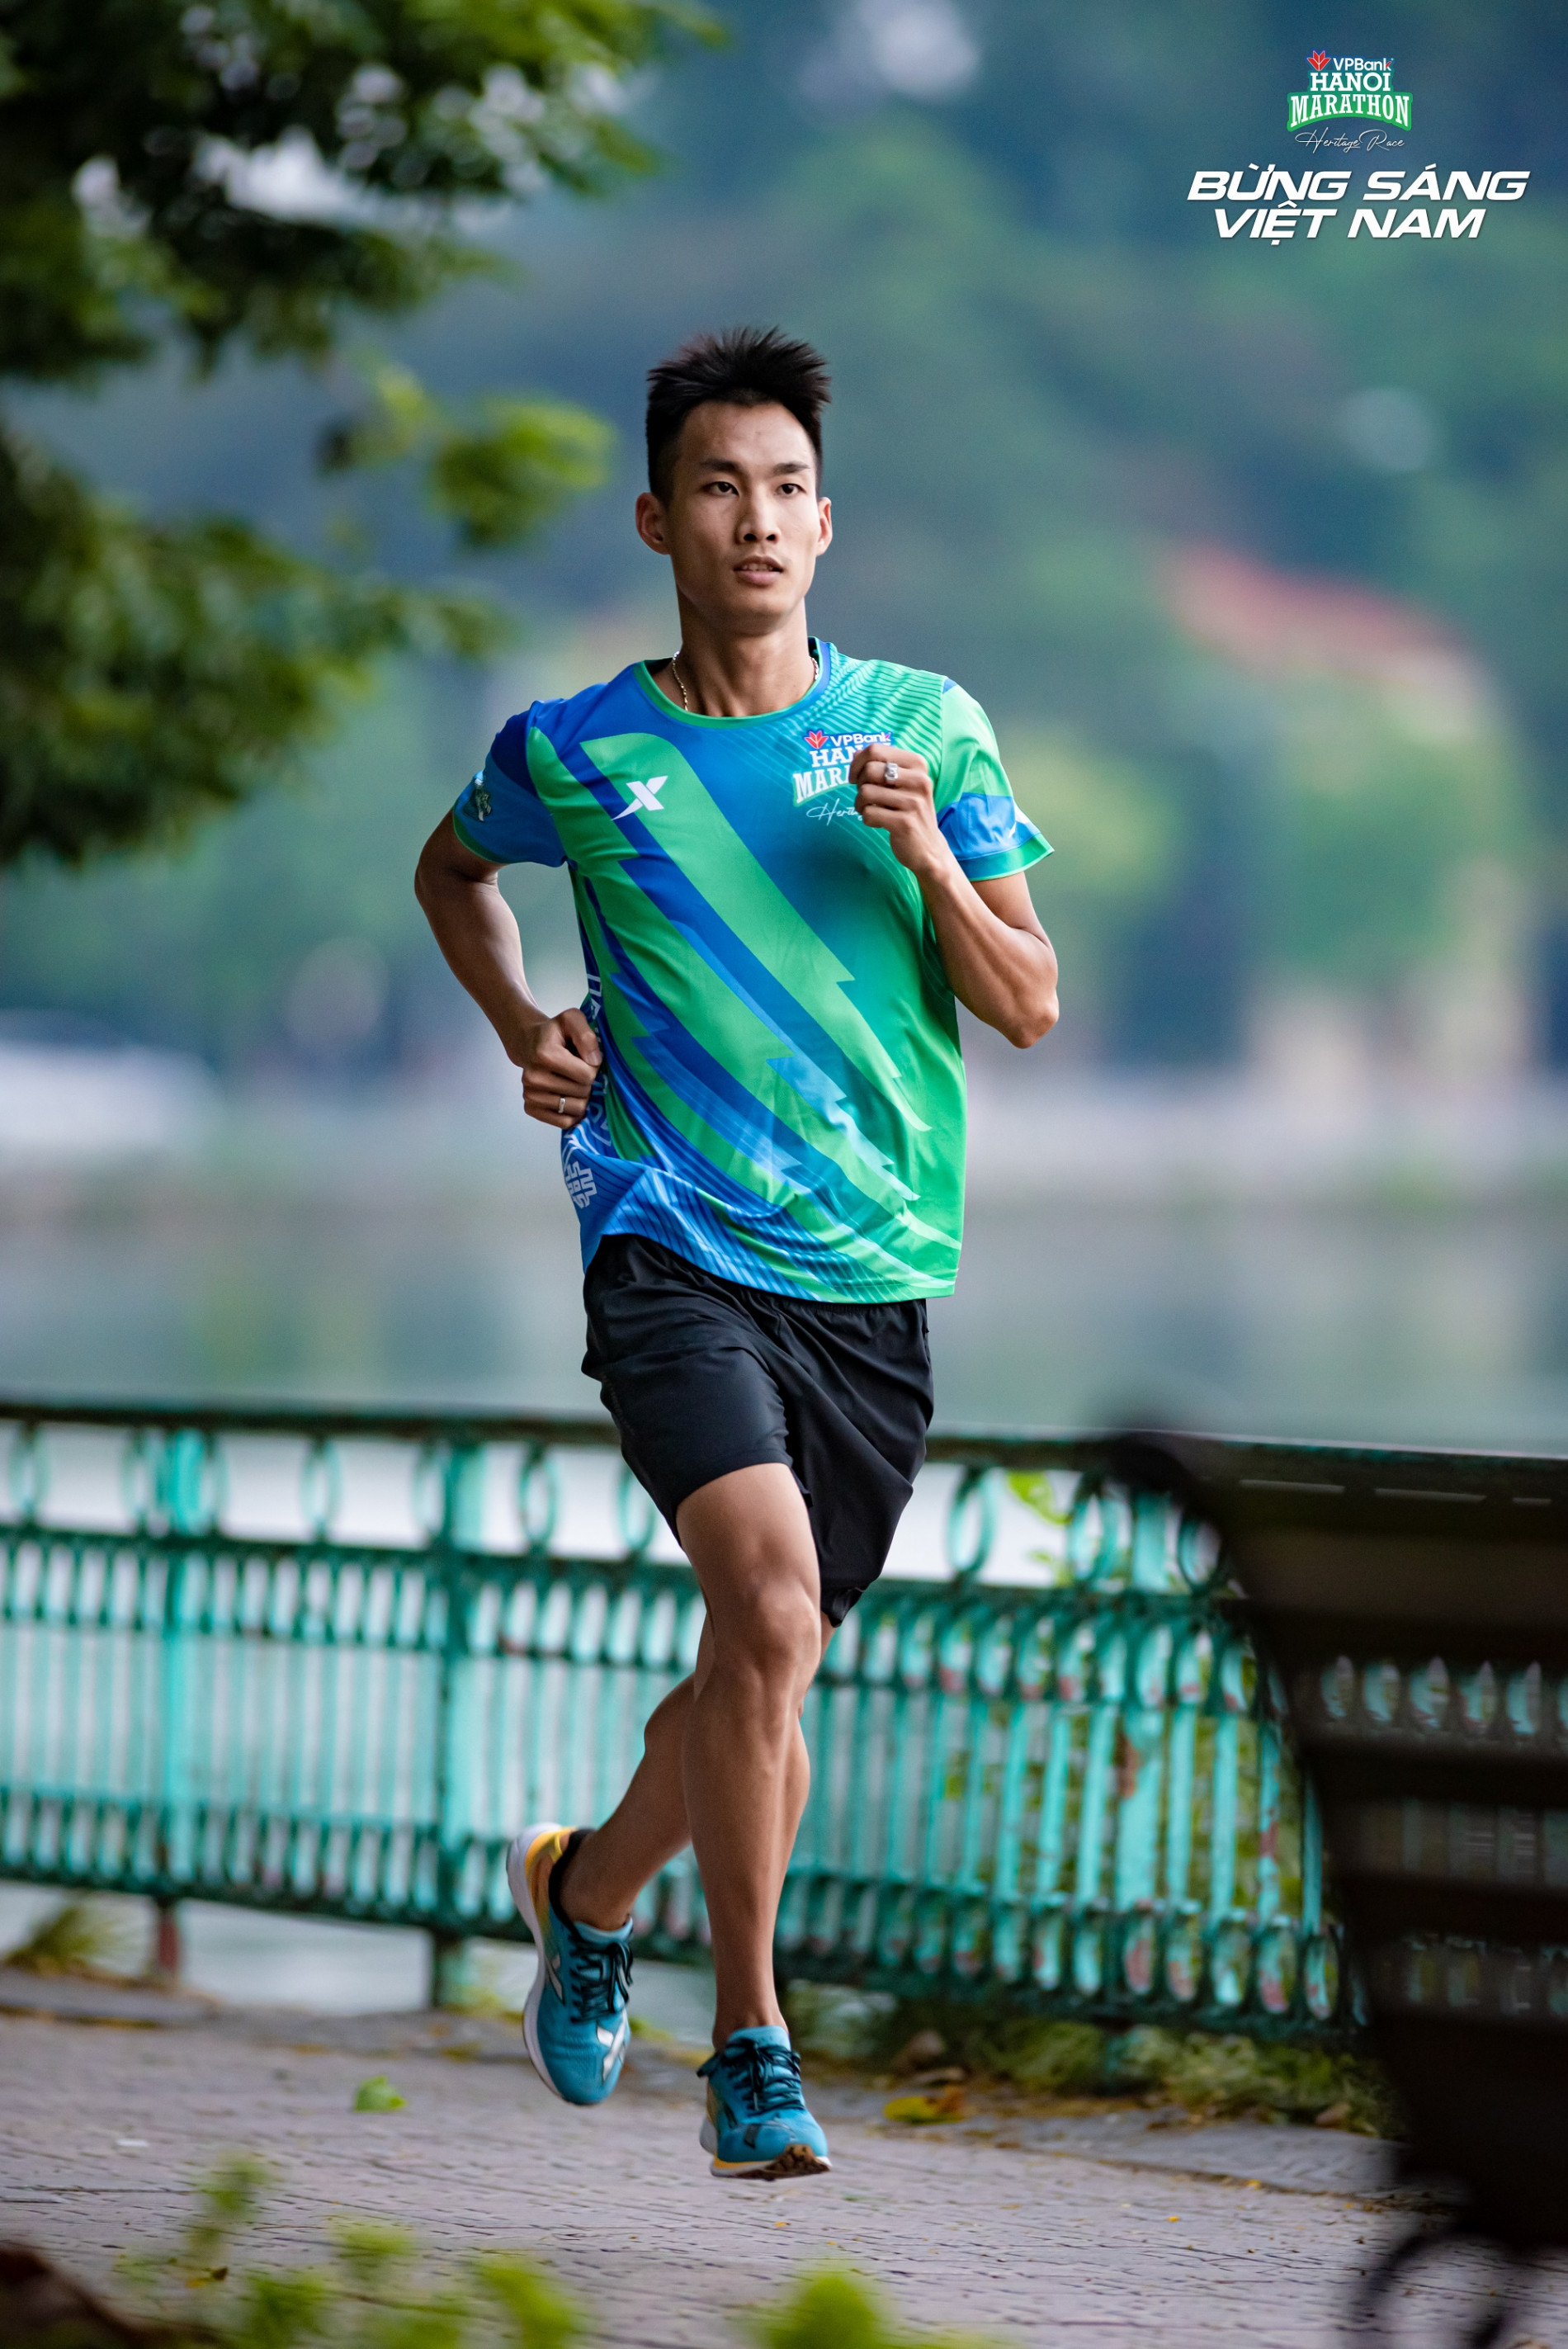 Vpbank Hanoi Marathon 2022 – Giải chạy biểu tượng của thành phố Hà Nội chính thức trở lại